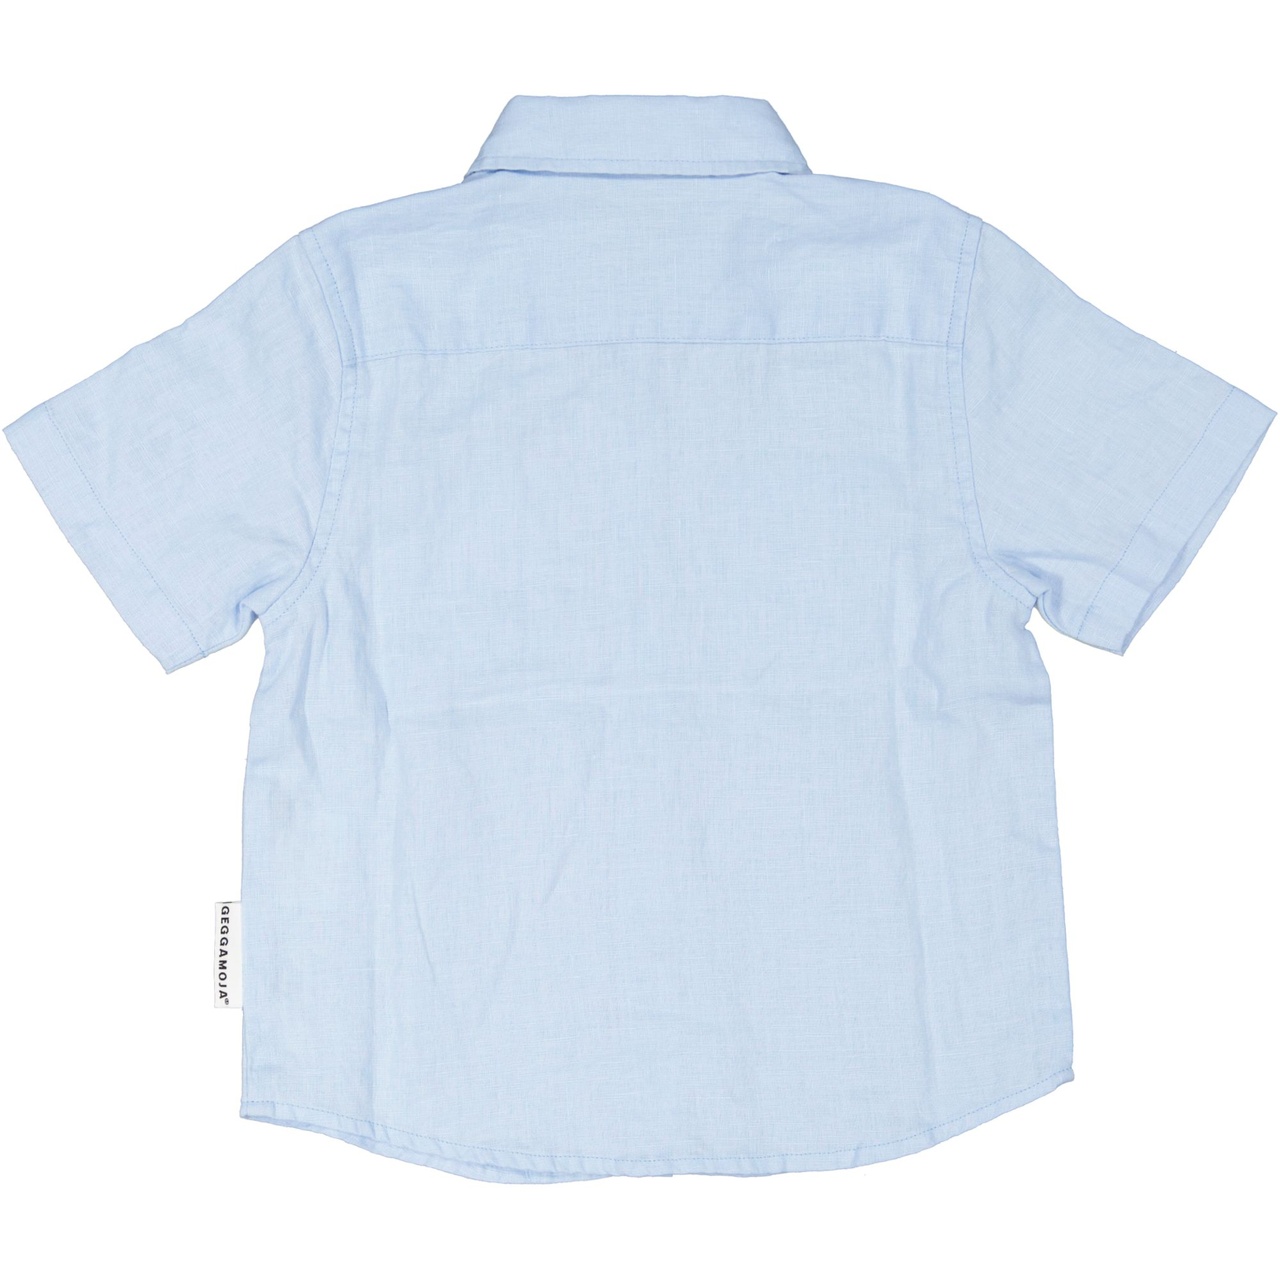 Linnen shirt L.blue 110/116